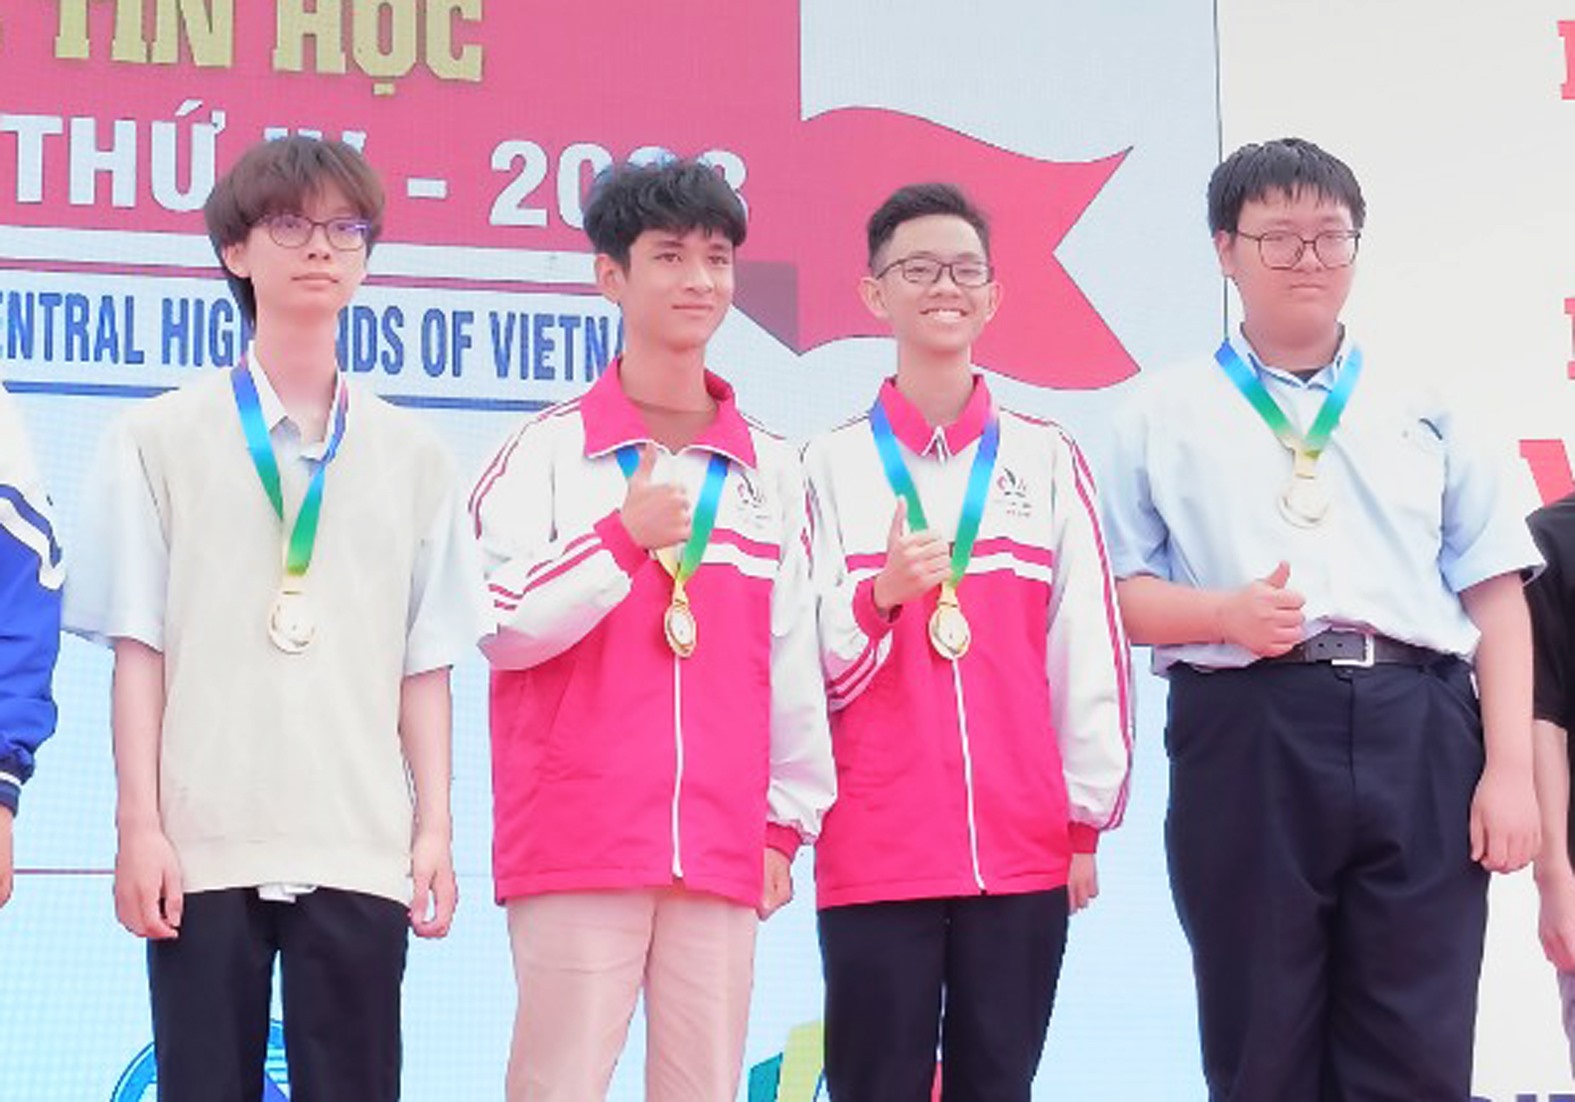 Hoàng Thiện Nhân và Trần Công Anh Khoa học sinh Trường THPT chuyên Lê Quý Đôn, Quảng Trị (ở giữa) được trao Huy chương Vàng của Bảng chuyên Tin - Ảnh: Thần Phong